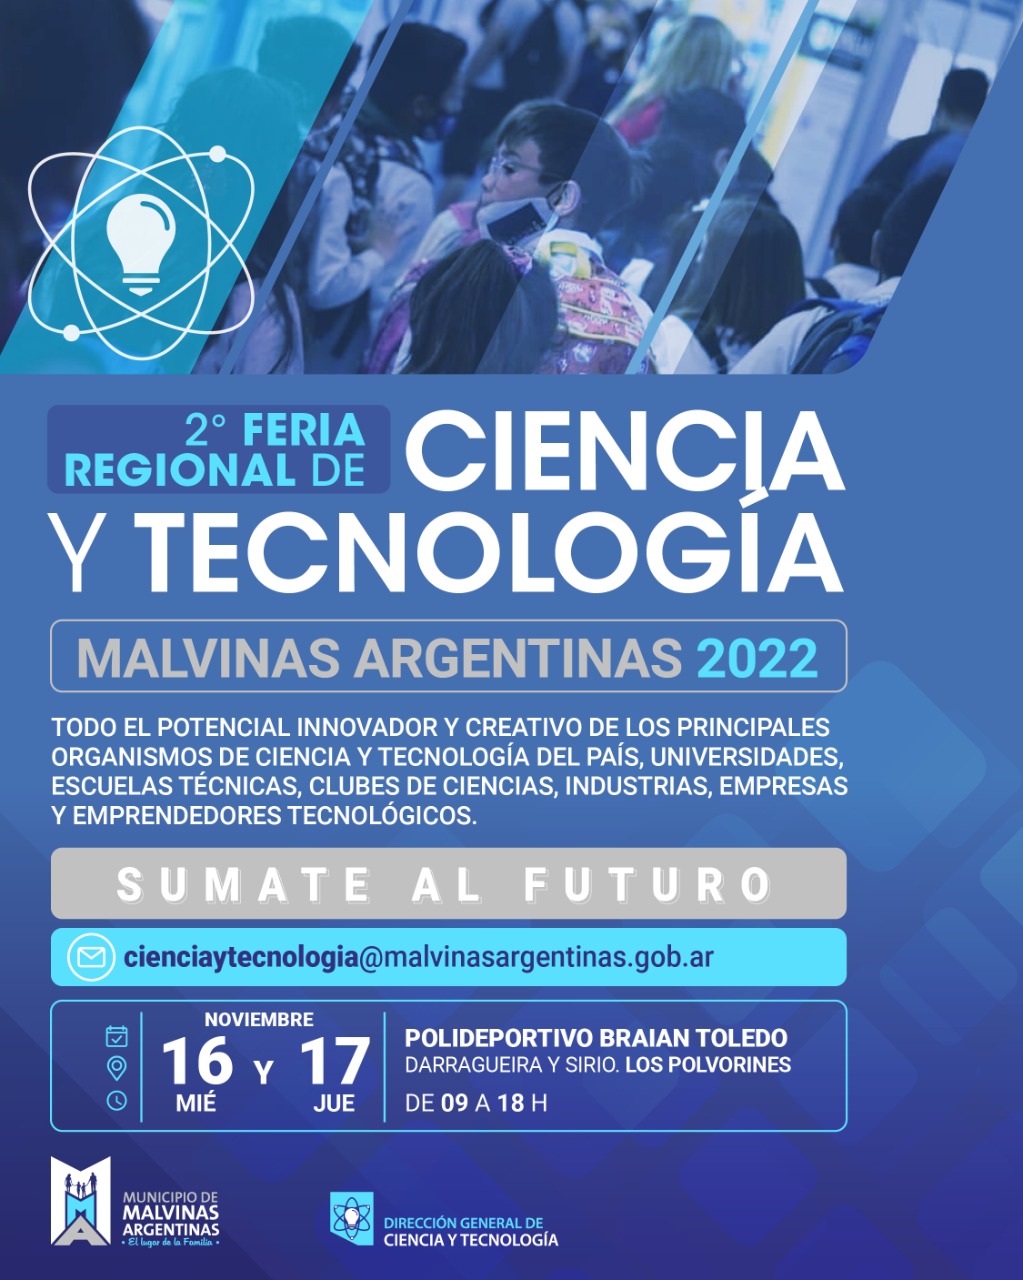 Se realizará la 2° Feria Regional de Ciencia y Tecnología en Malvinas Argentinas